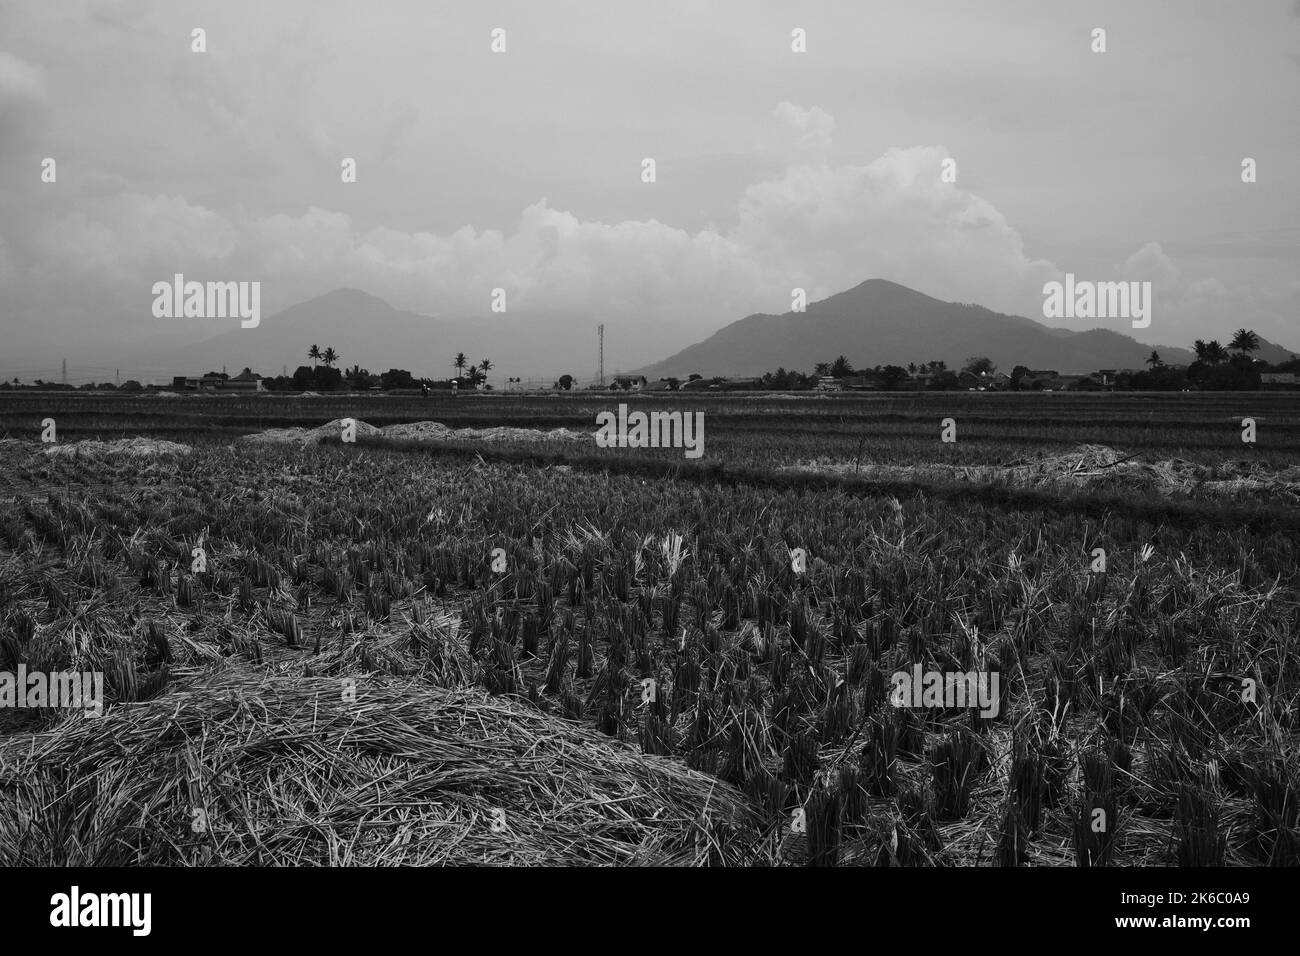 Geerntetes Getreide, Ansicht von Reisfeldern und Heuhaufen, die geerntet wurden, Cikancung - Indonesien Stockfoto